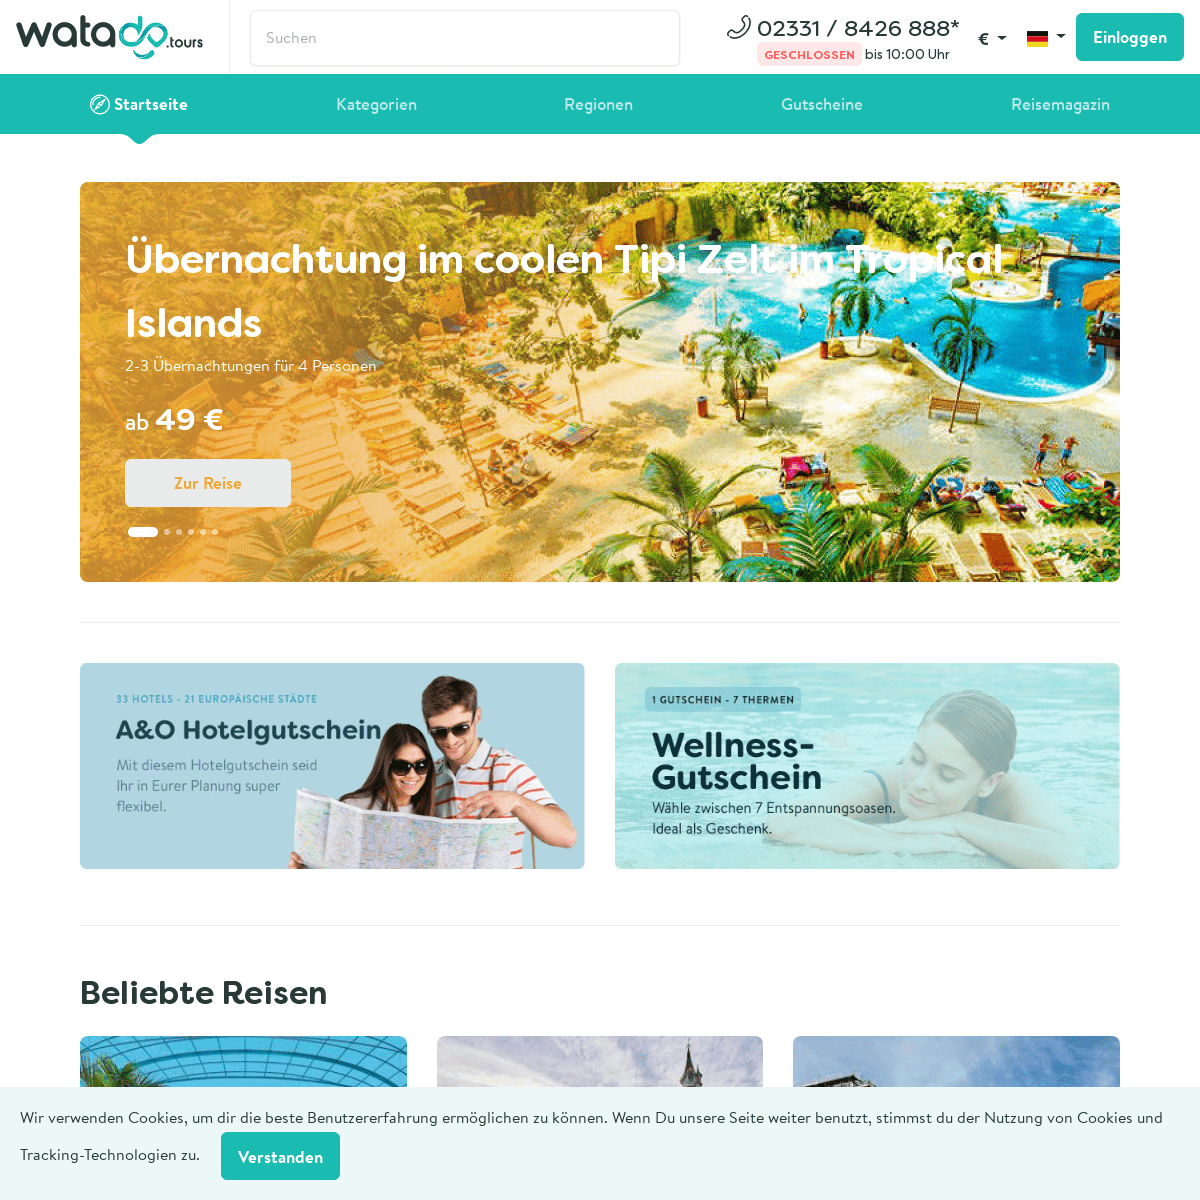 Startseite - watado.tours - Kurzurlaub online buchen